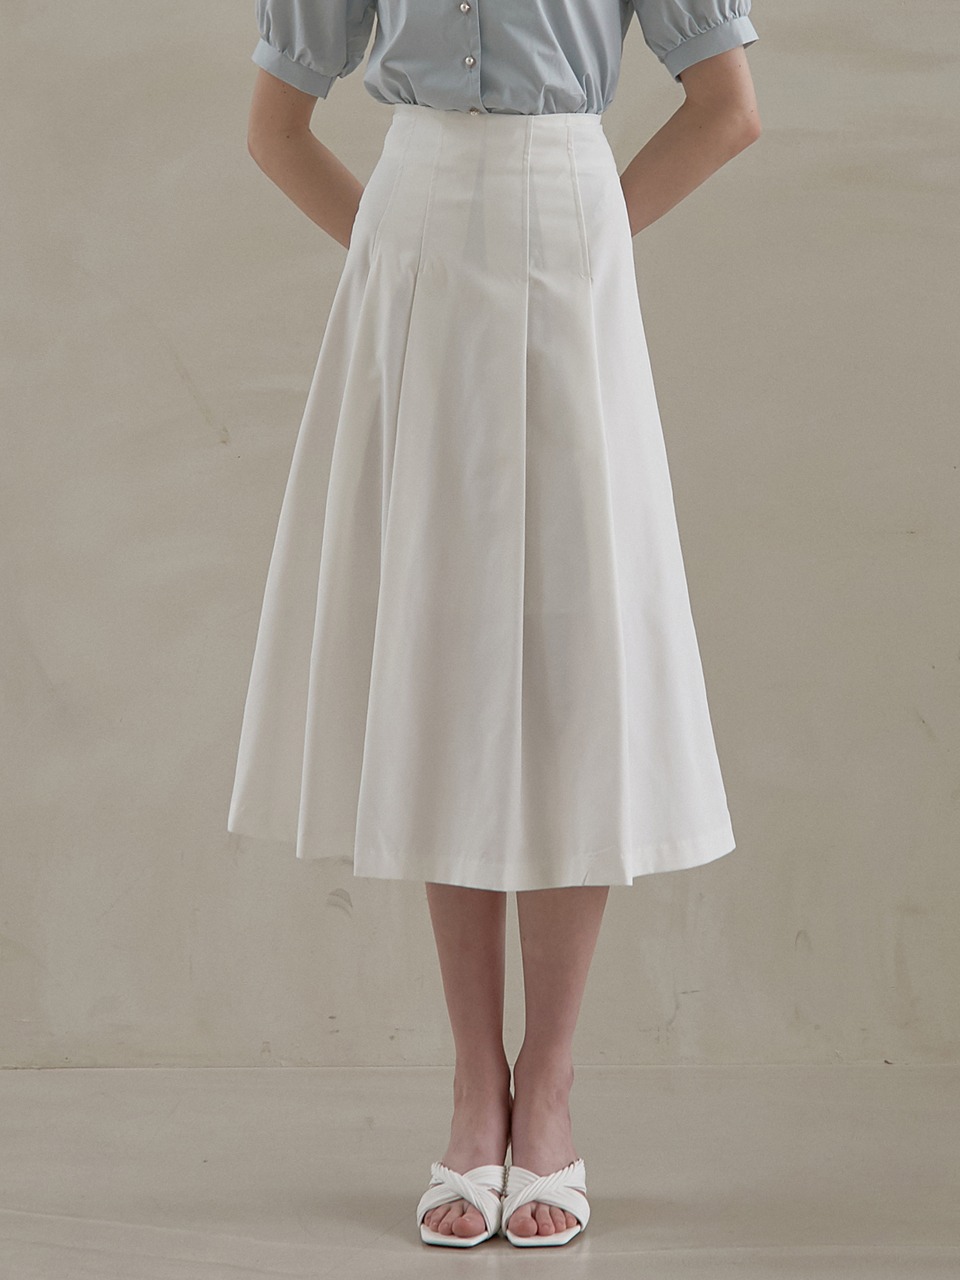 j973 pintuck long skirt (white)